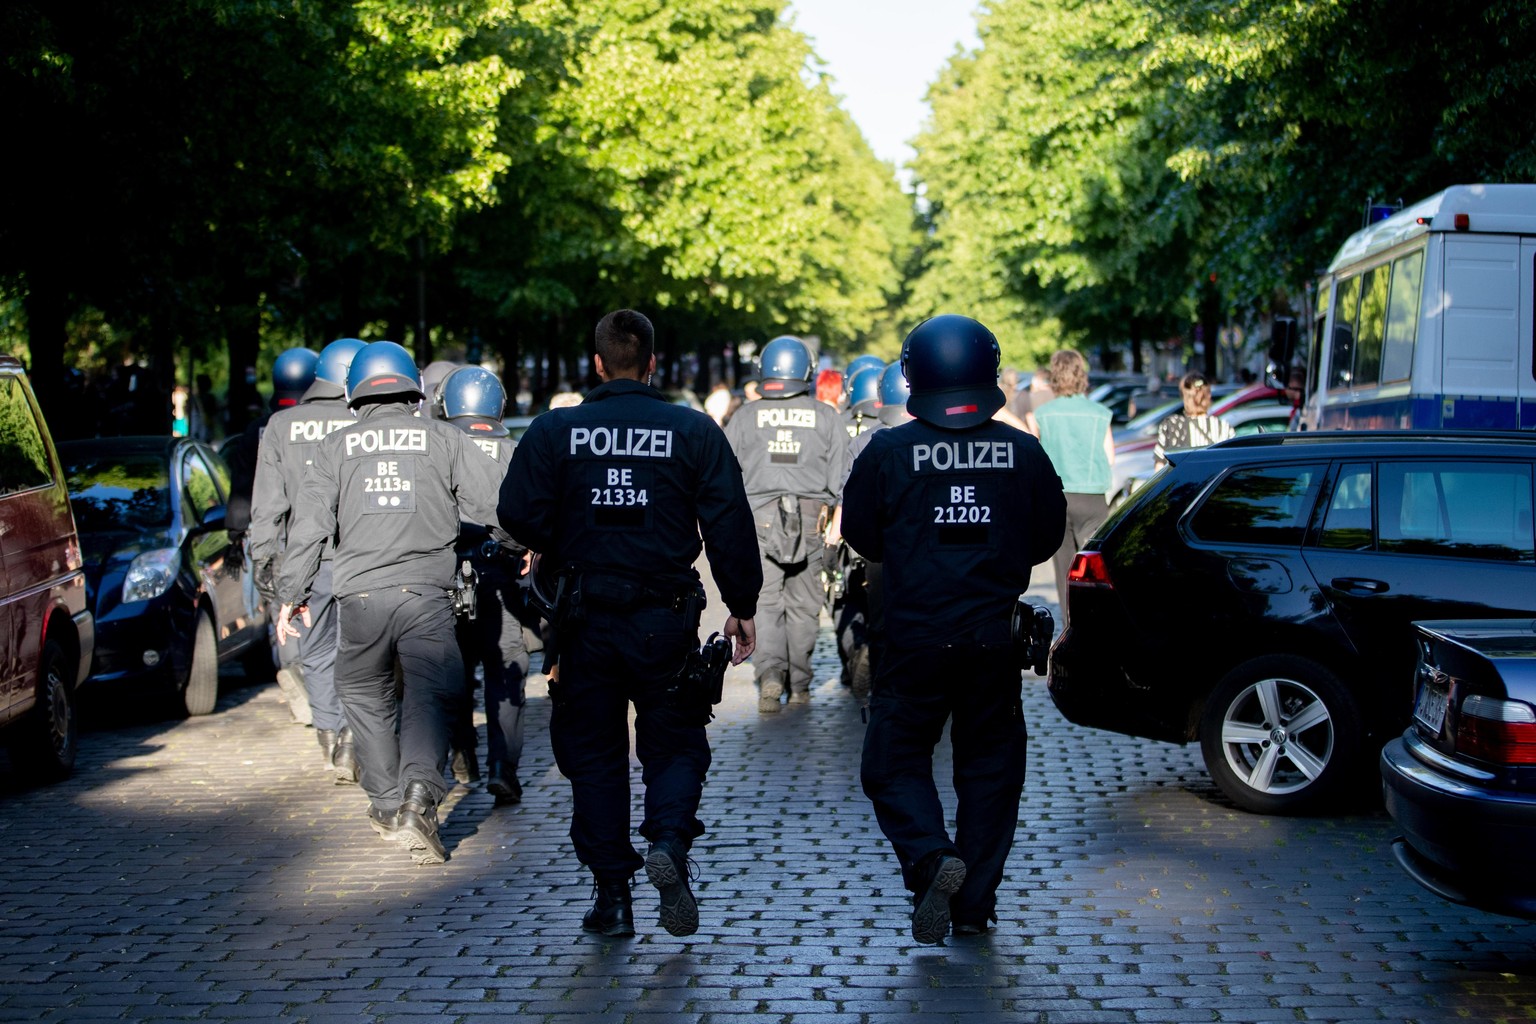 ARCHIV - 02.06.2020, Berlin: Polizisten gehen bei einer Demonstration durch eine Straße. Die Berliner Polizei werde am Wochenende mit Hunderten Beamten im Einsatz sein. (zu &quot;Berlin am Wochenende: ...